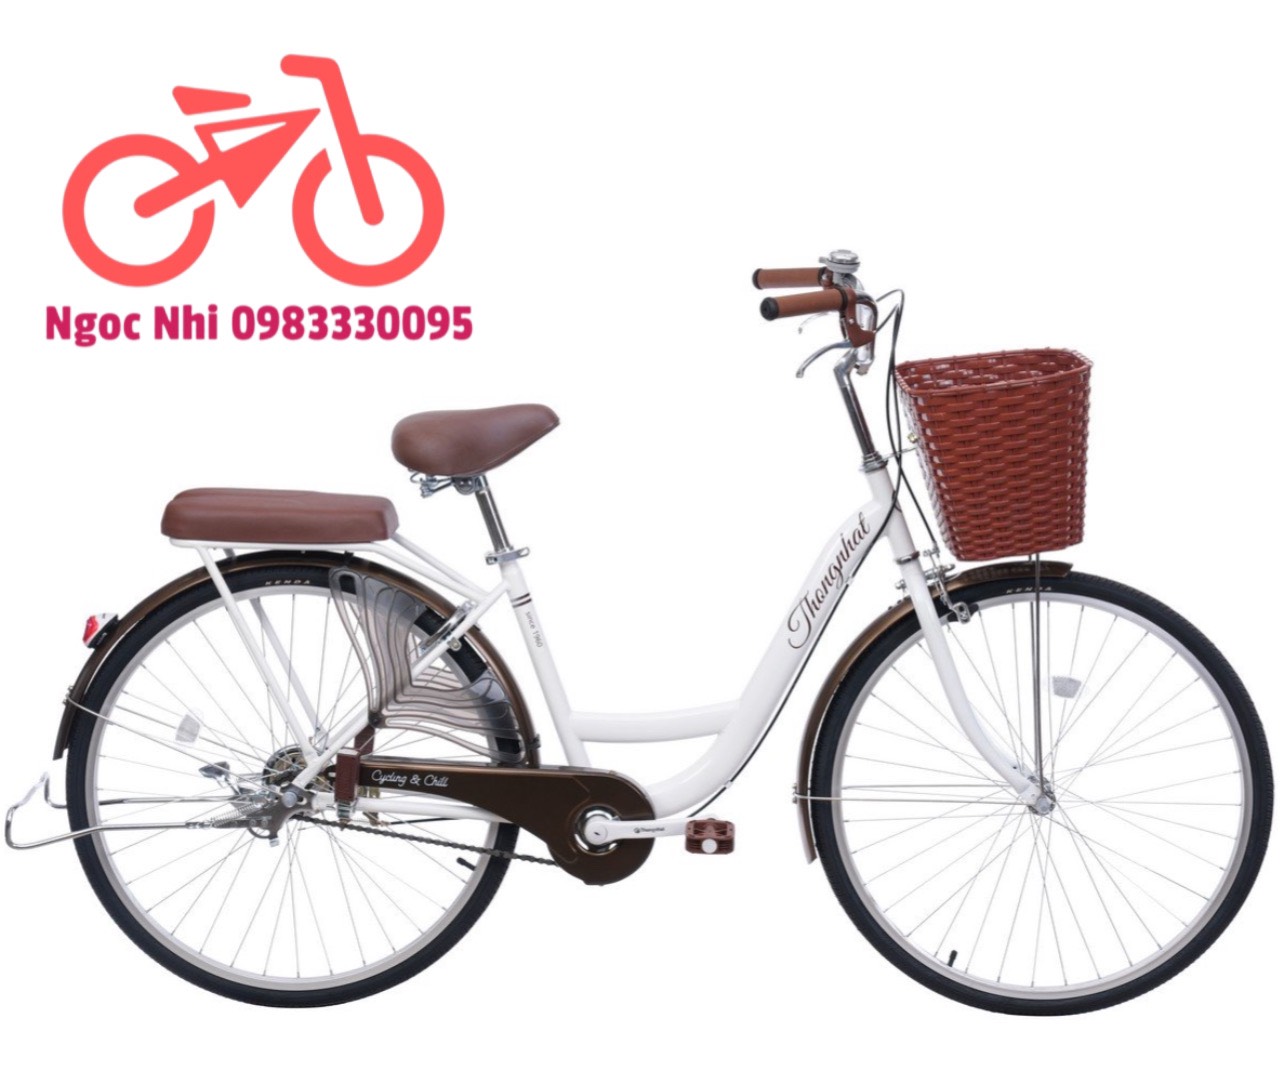 Xe đạp Mini Thống Nhất New 24 26 inch, chính hãng bảo hành 3 năm.